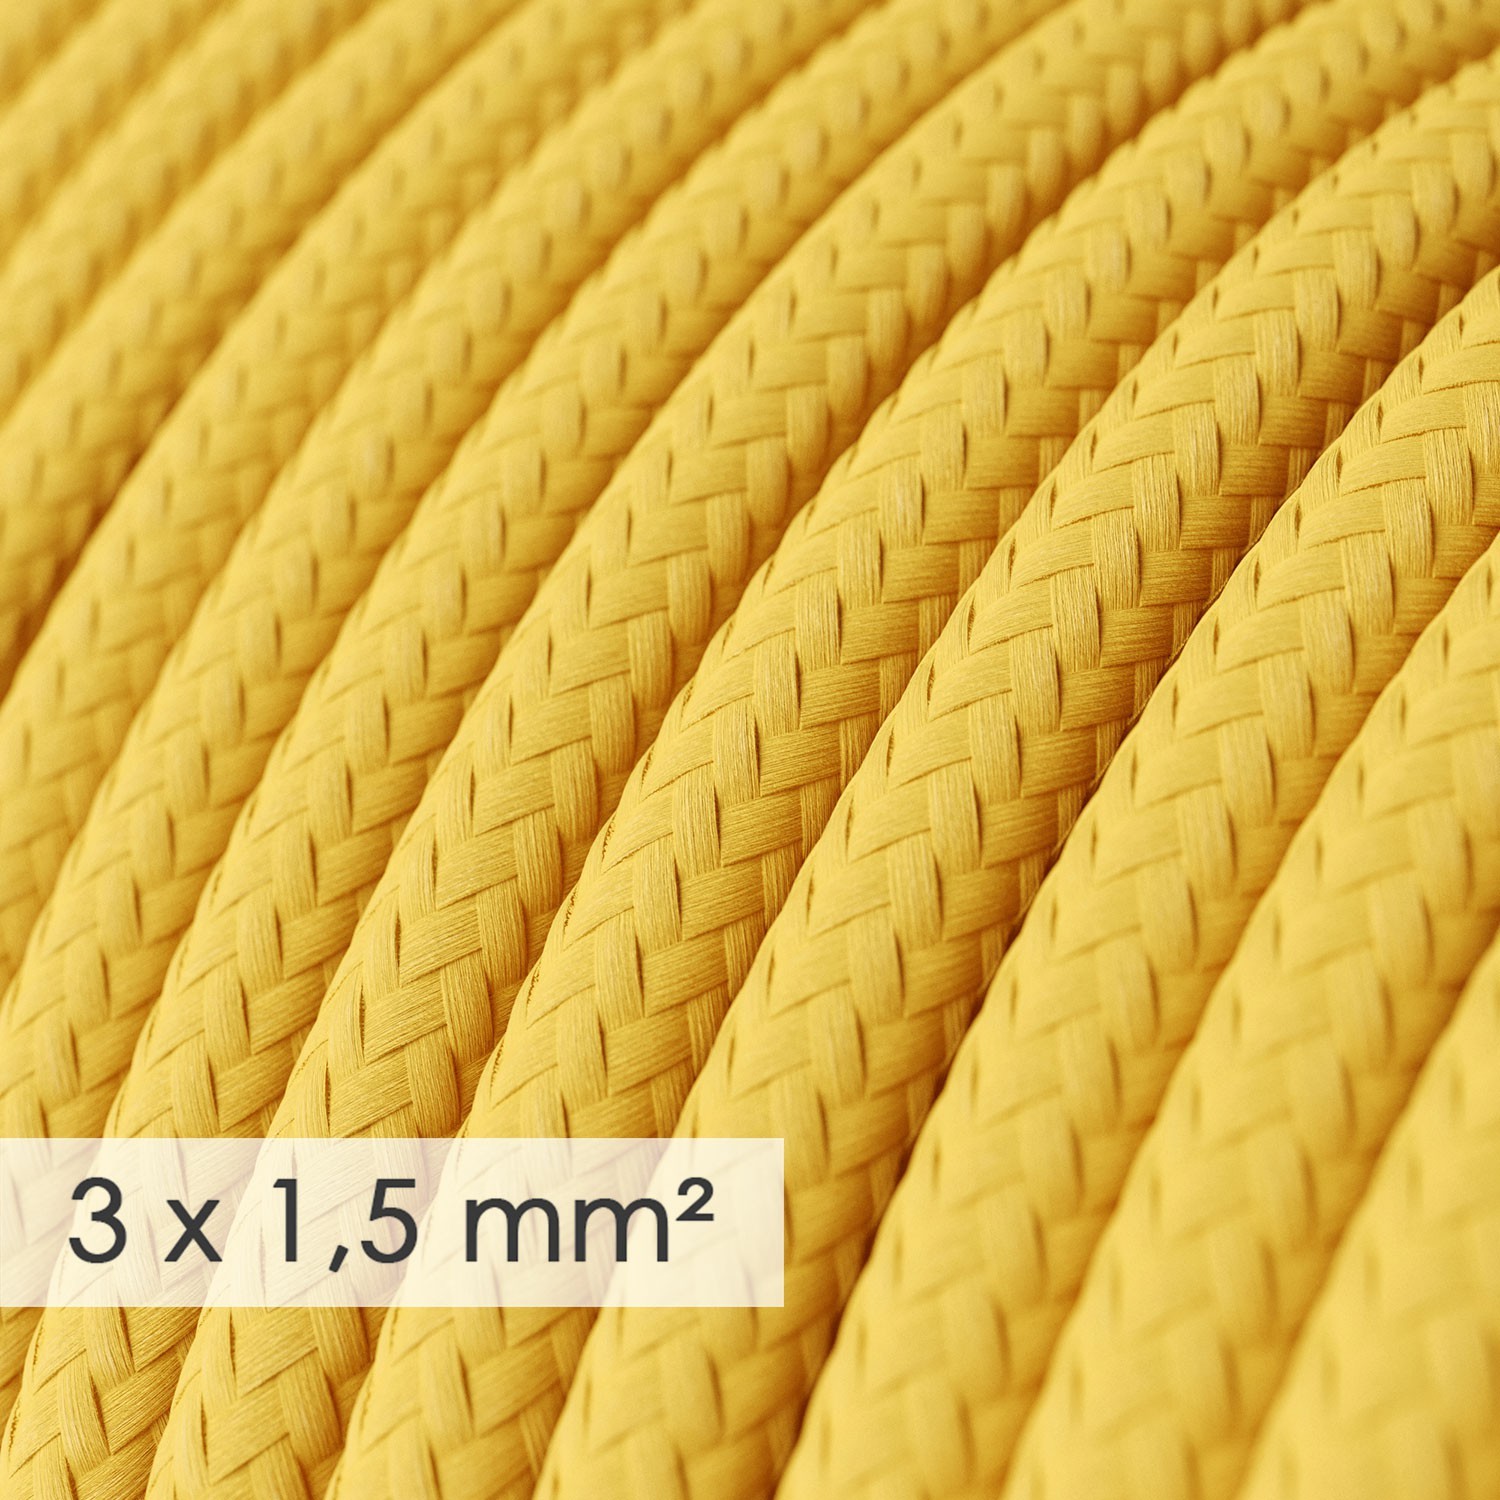 Okrugao kabel većeg presjeka (3x1,50) - žuti RM10